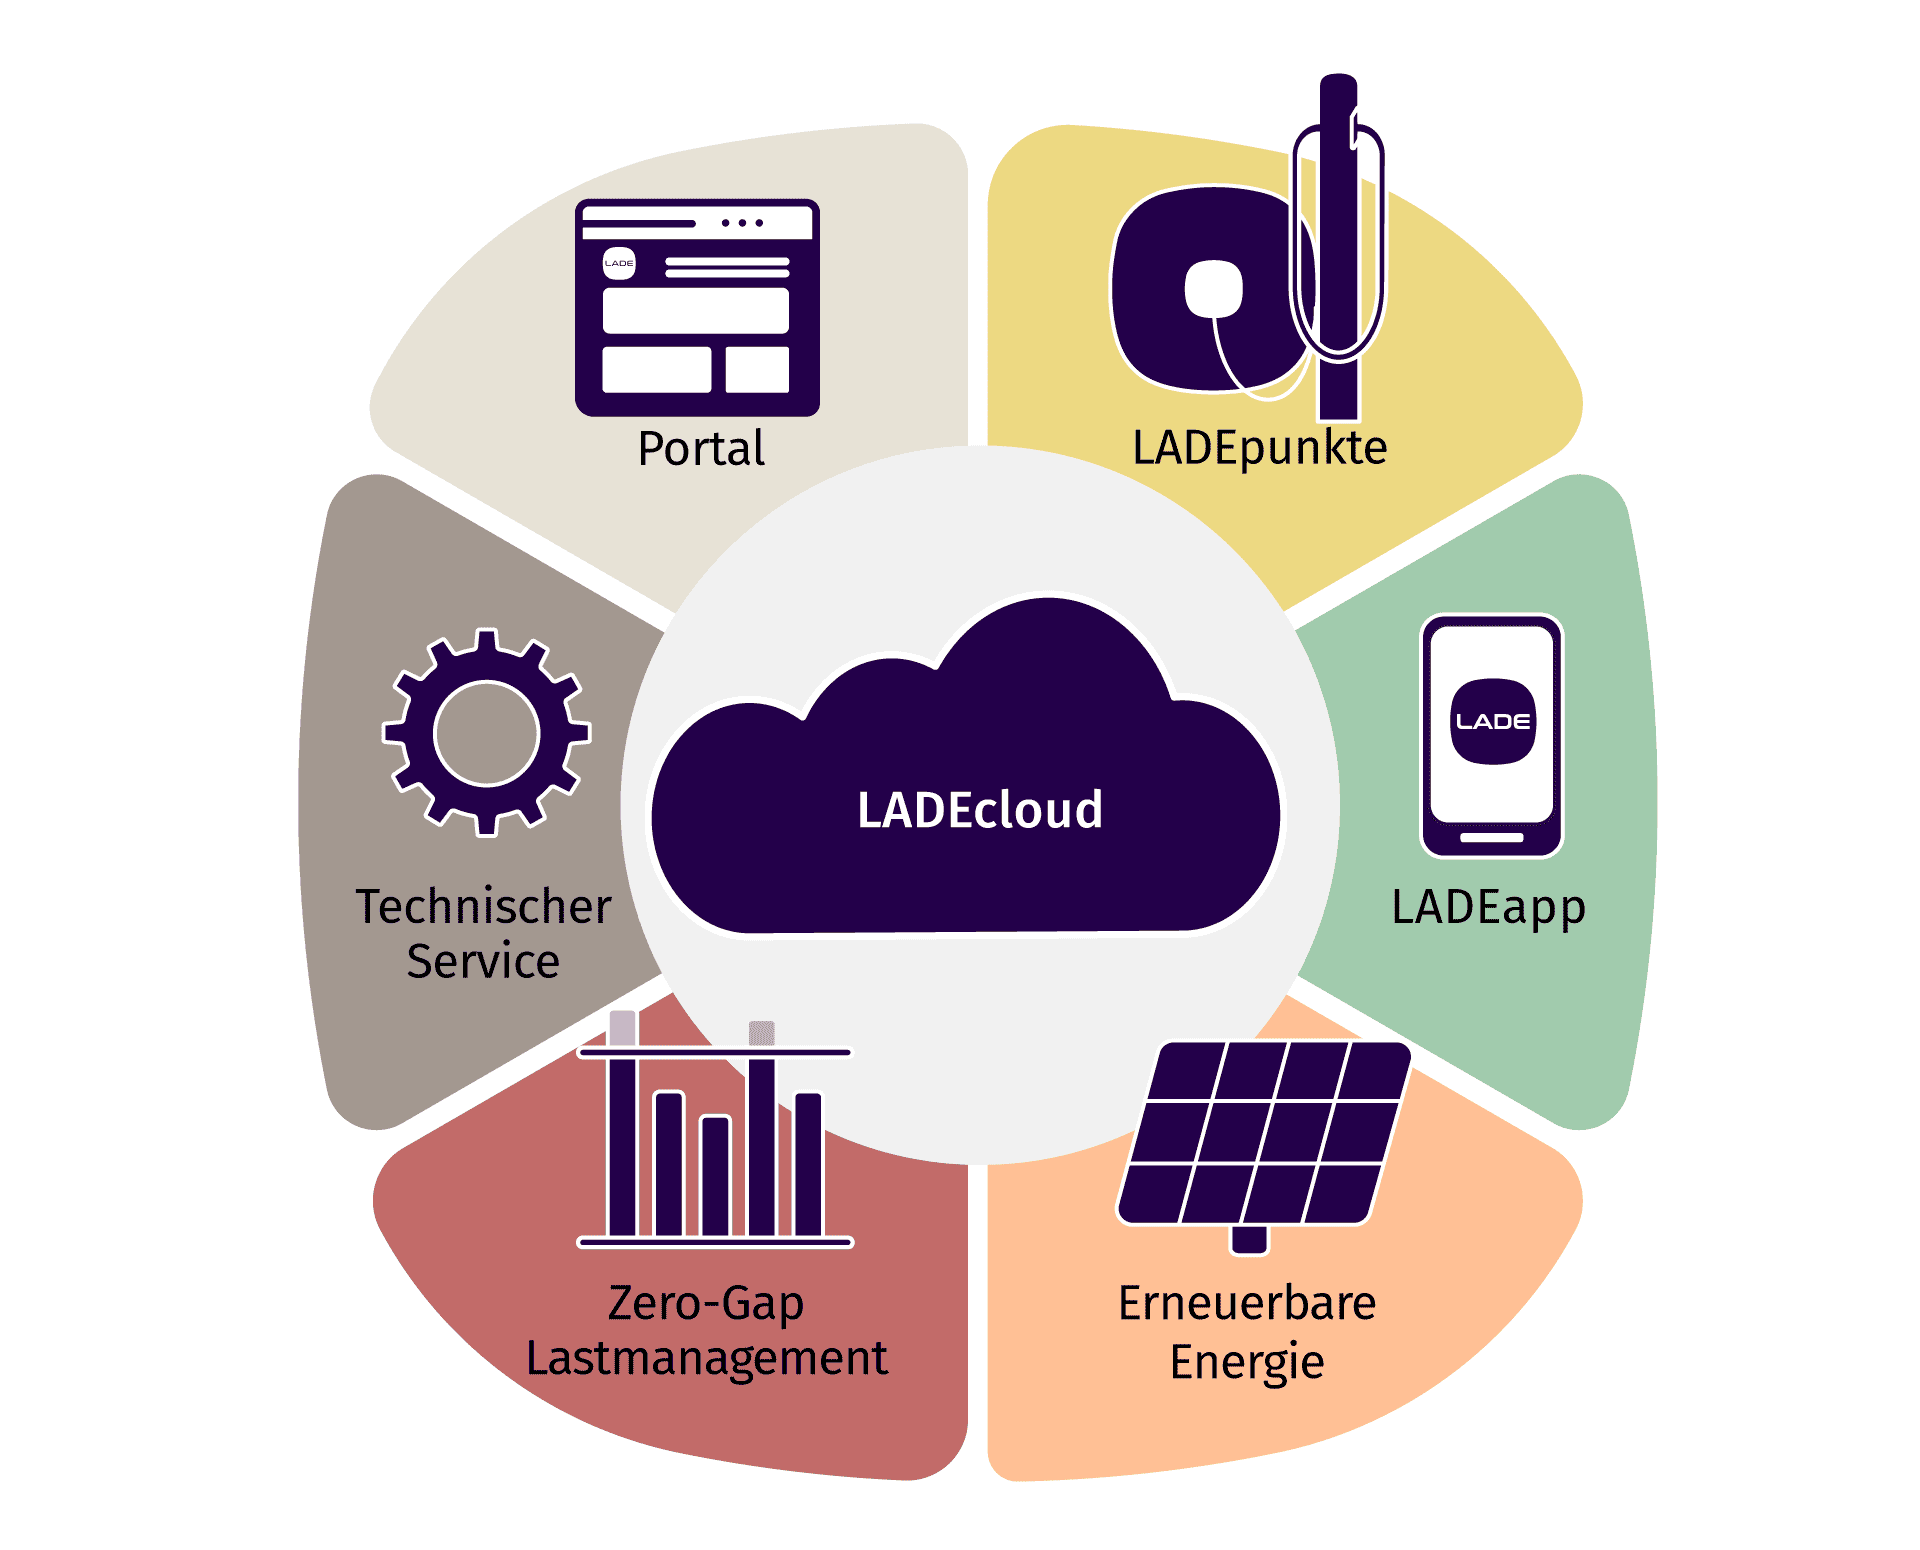 Infografik über die unterschiedlichen Angebote der LADEcloud: LADEapp, mit erneuerbaren Energien, Zero-Gap-Lastmanagement, technischer Service, Portal